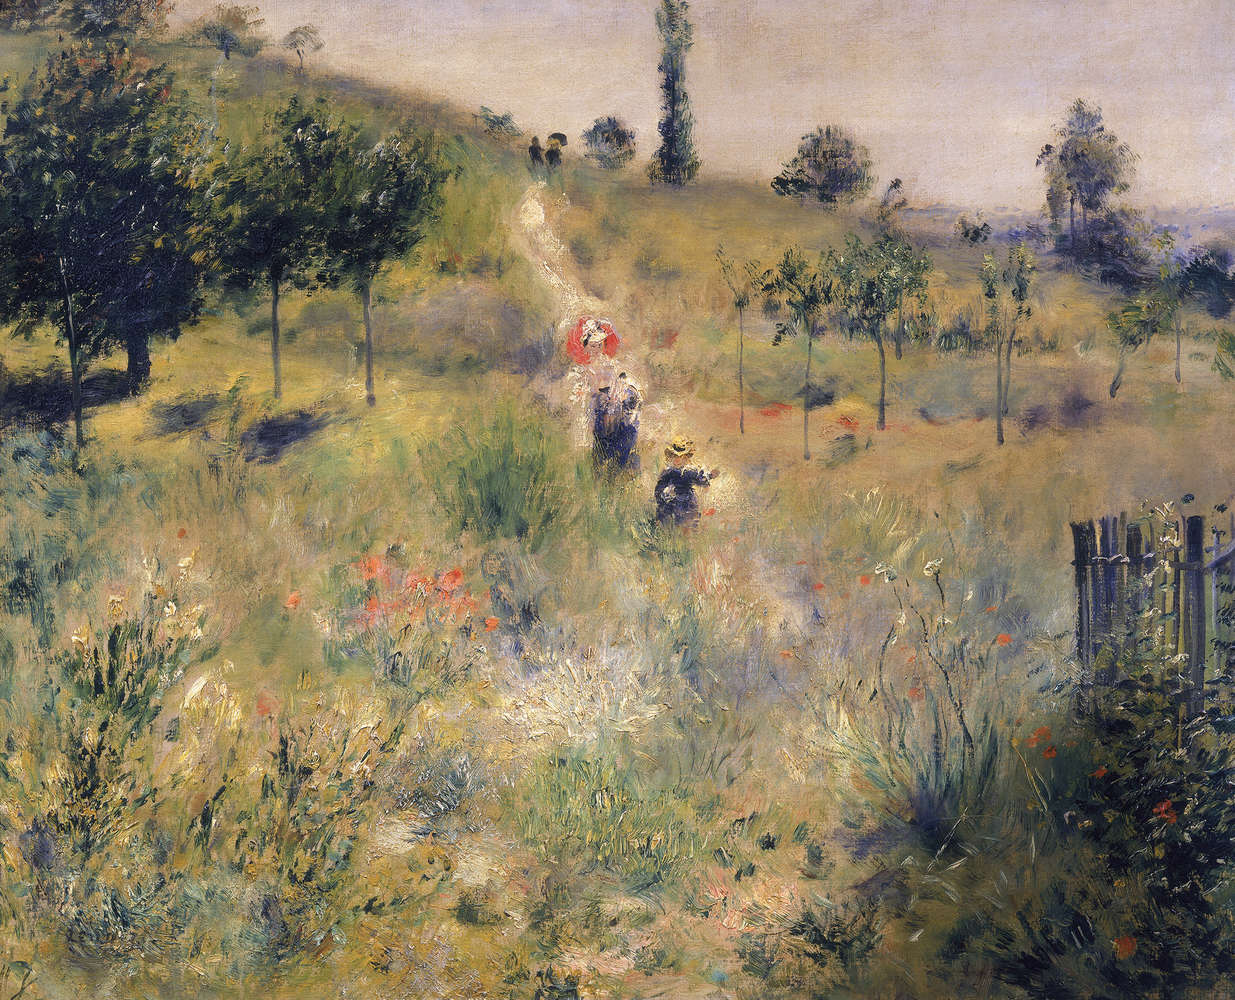             Papier peint "Chemin montant à travers les hautes herbes" de Pierre Auguste Renoir
        